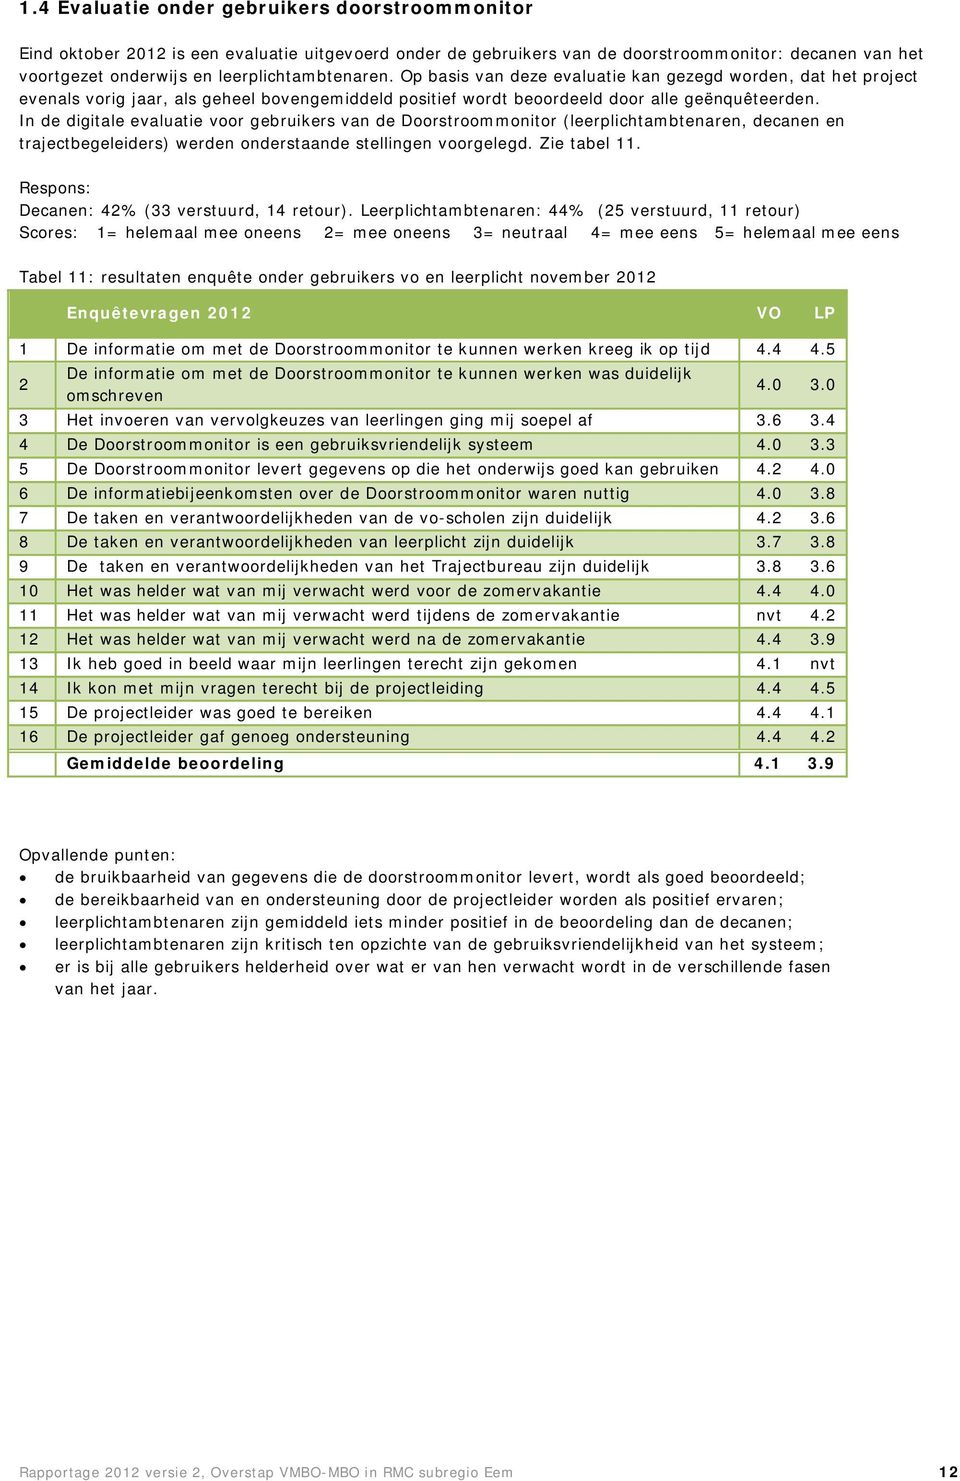 In de digitale evaluatie voor gebruikers van de Doorstroommonitor (leerplichtambtenaren, decanen en trajectbegeleiders) werden onderstaande stellingen voorgelegd. Zie tabel 11.